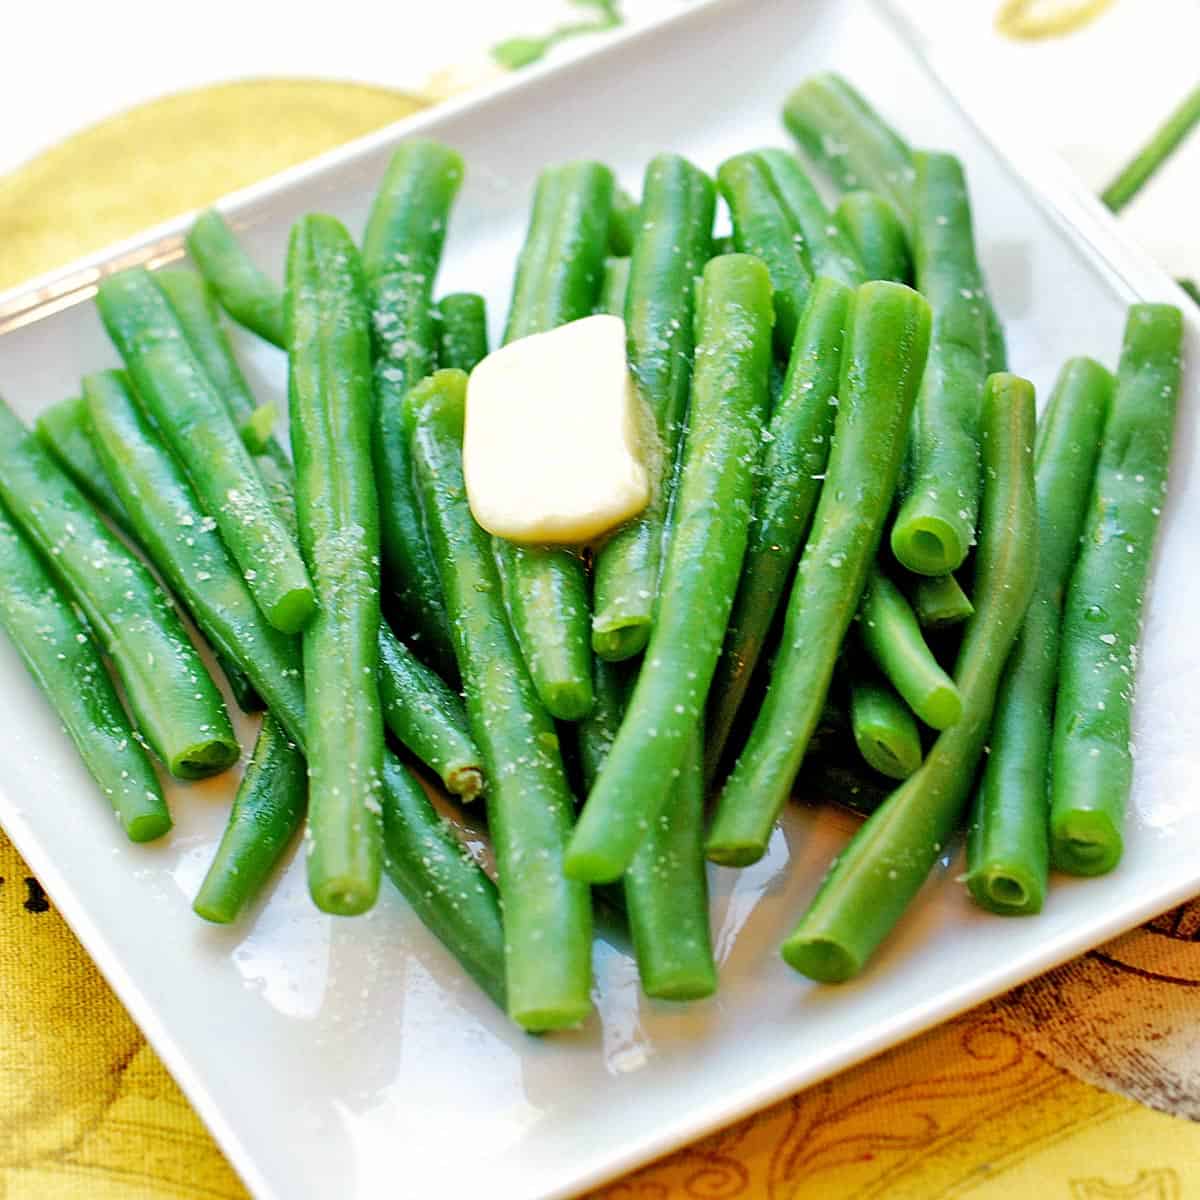 https://healthyrecipesblogs.com/wp-content/uploads/2012/07/boiled-green-beans-featured-2022.jpg